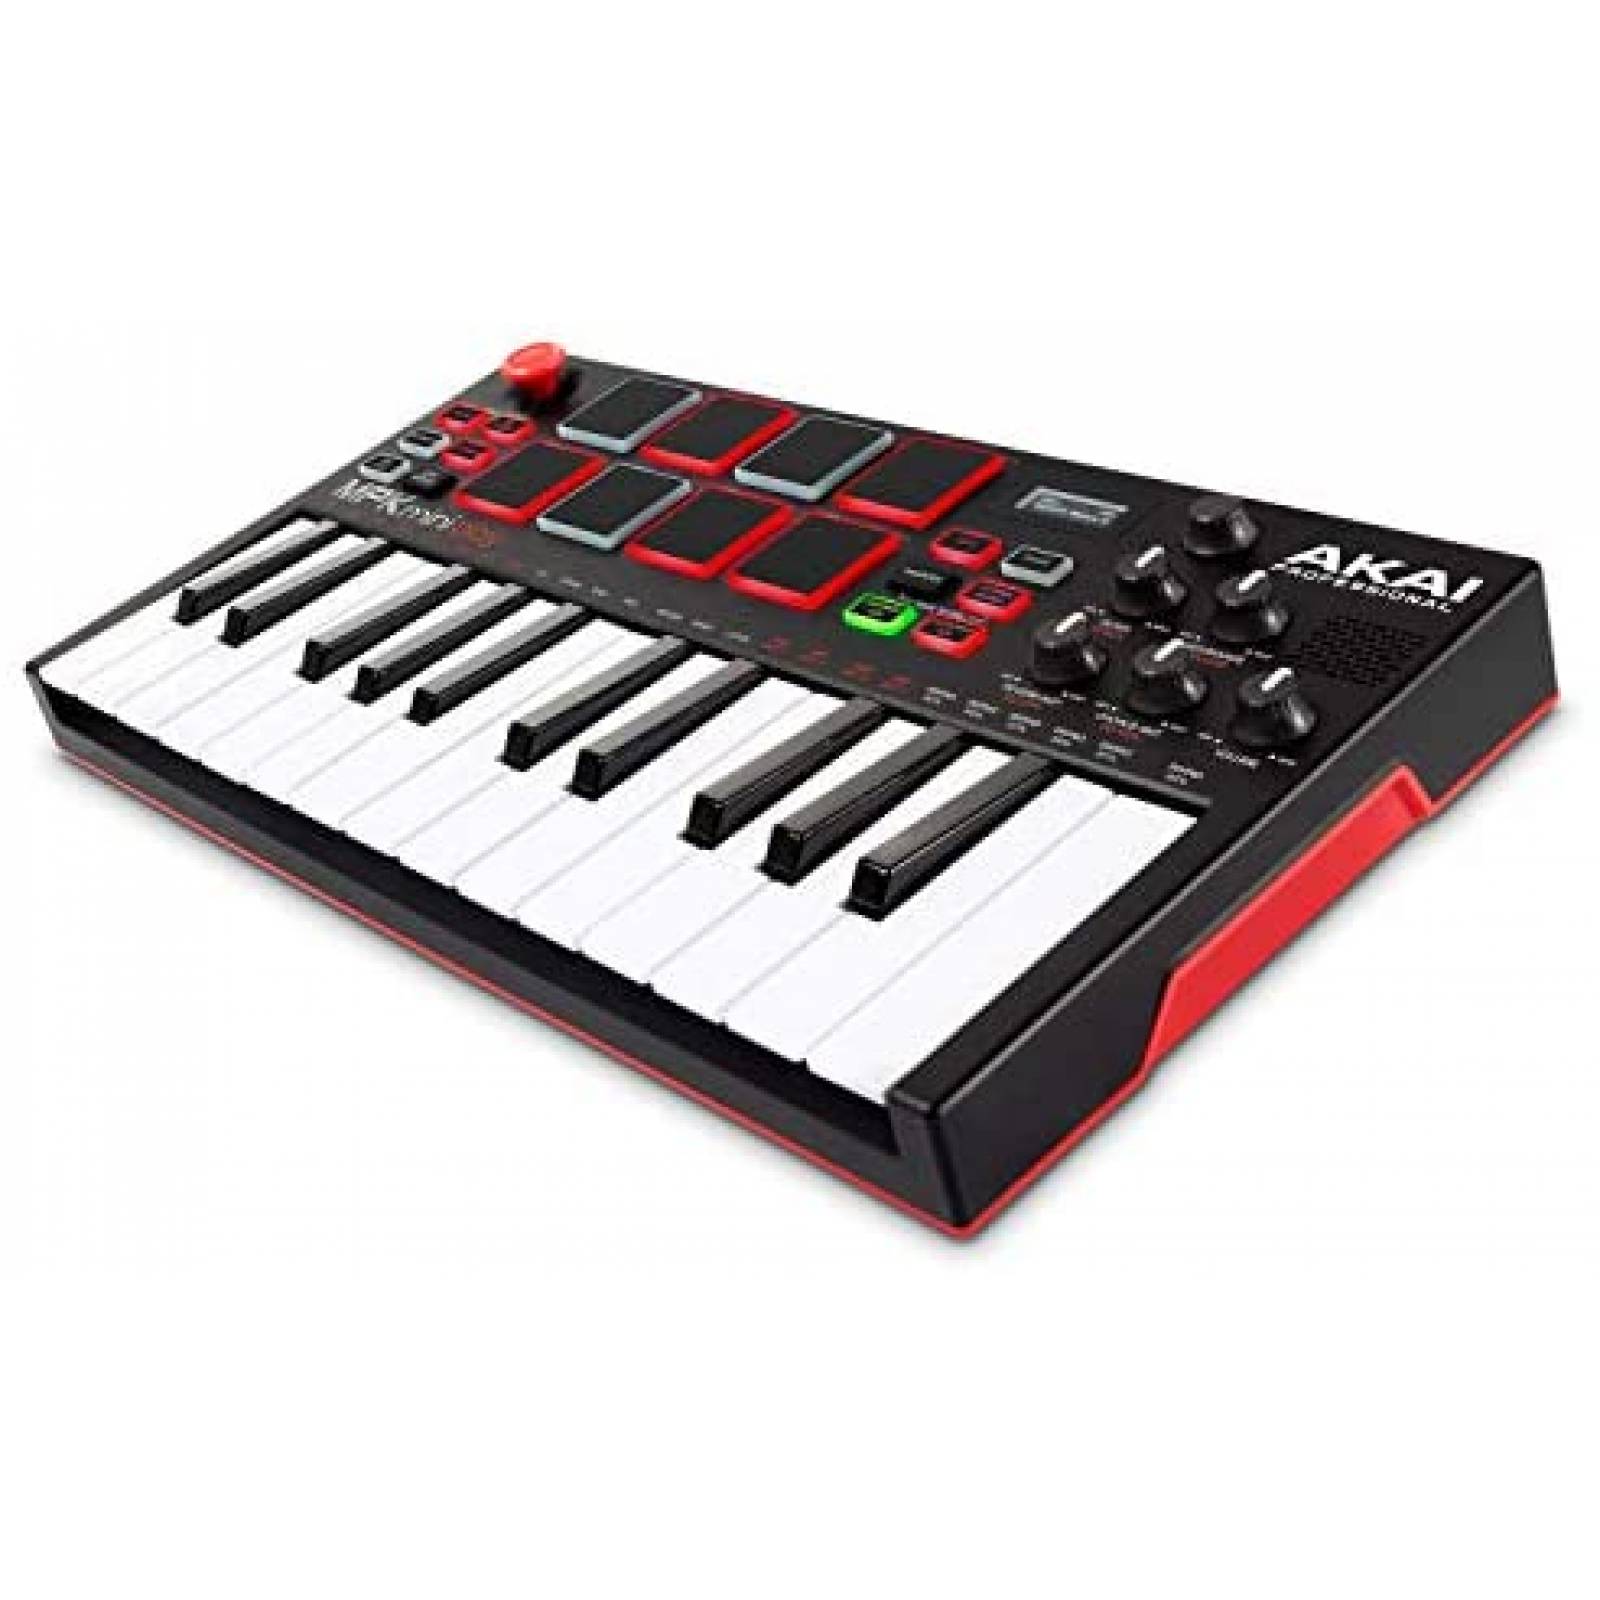 🎹Sintetizador o Controlador MIDI, cual deberías comprar⎮Carlos